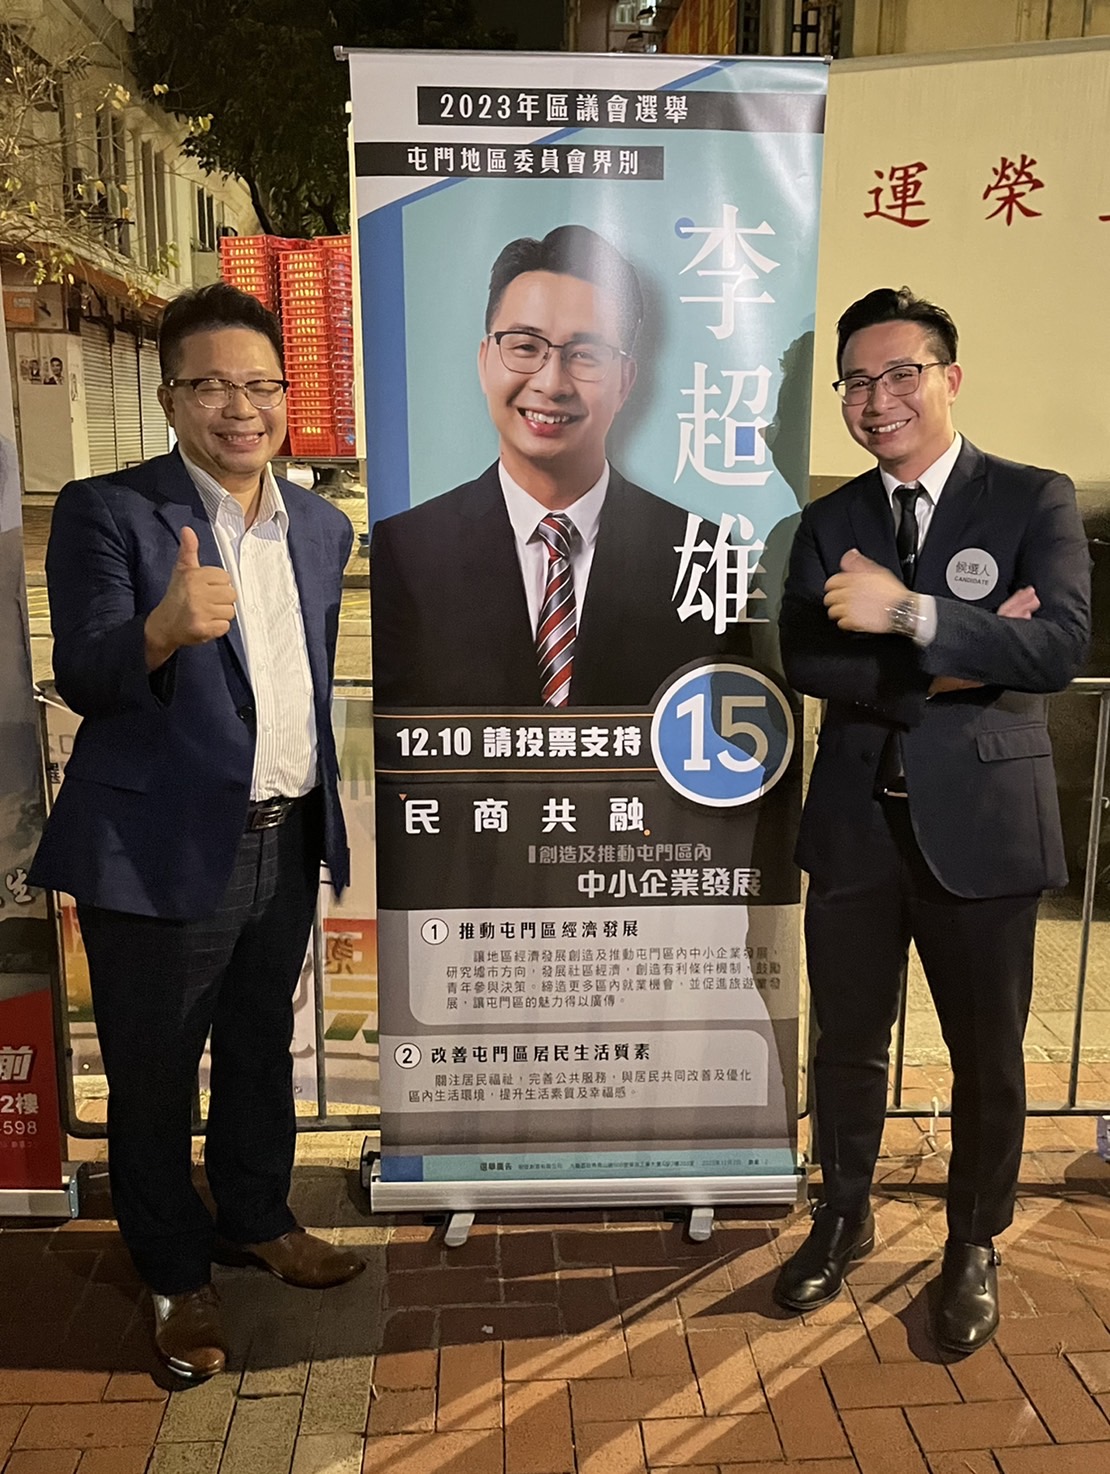 日 前 回 香 港 為 選 區 議 員 的 弟 弟 李 超 雄 ( 右 ) 打 氣 ， 也 鼓 勵 我 們 這 個 家 族 再 往 前 ！ 希 望 他 上 任 後 不 忘 初 心 ， 也 造 福 社 群 ！ 